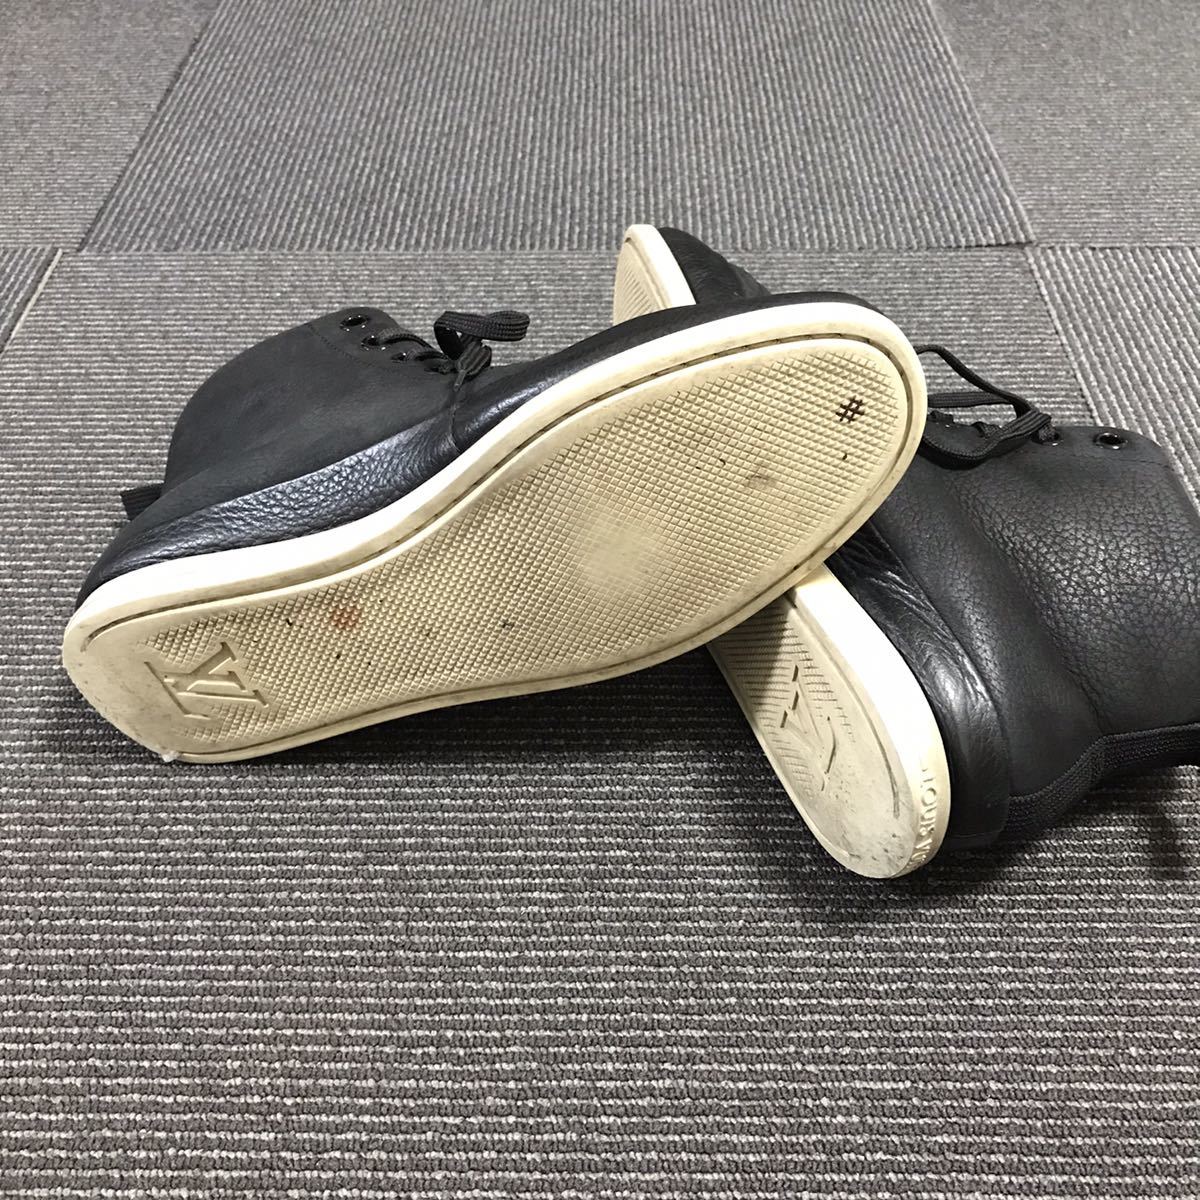 【ルイヴィトン】本物 LOUIS VUITTON 靴 25.5cm 黒 LVロゴモチーフ ハイカットシューズ スニーカー カジュアル レザー メンズ 伊製 6 1/2_画像5